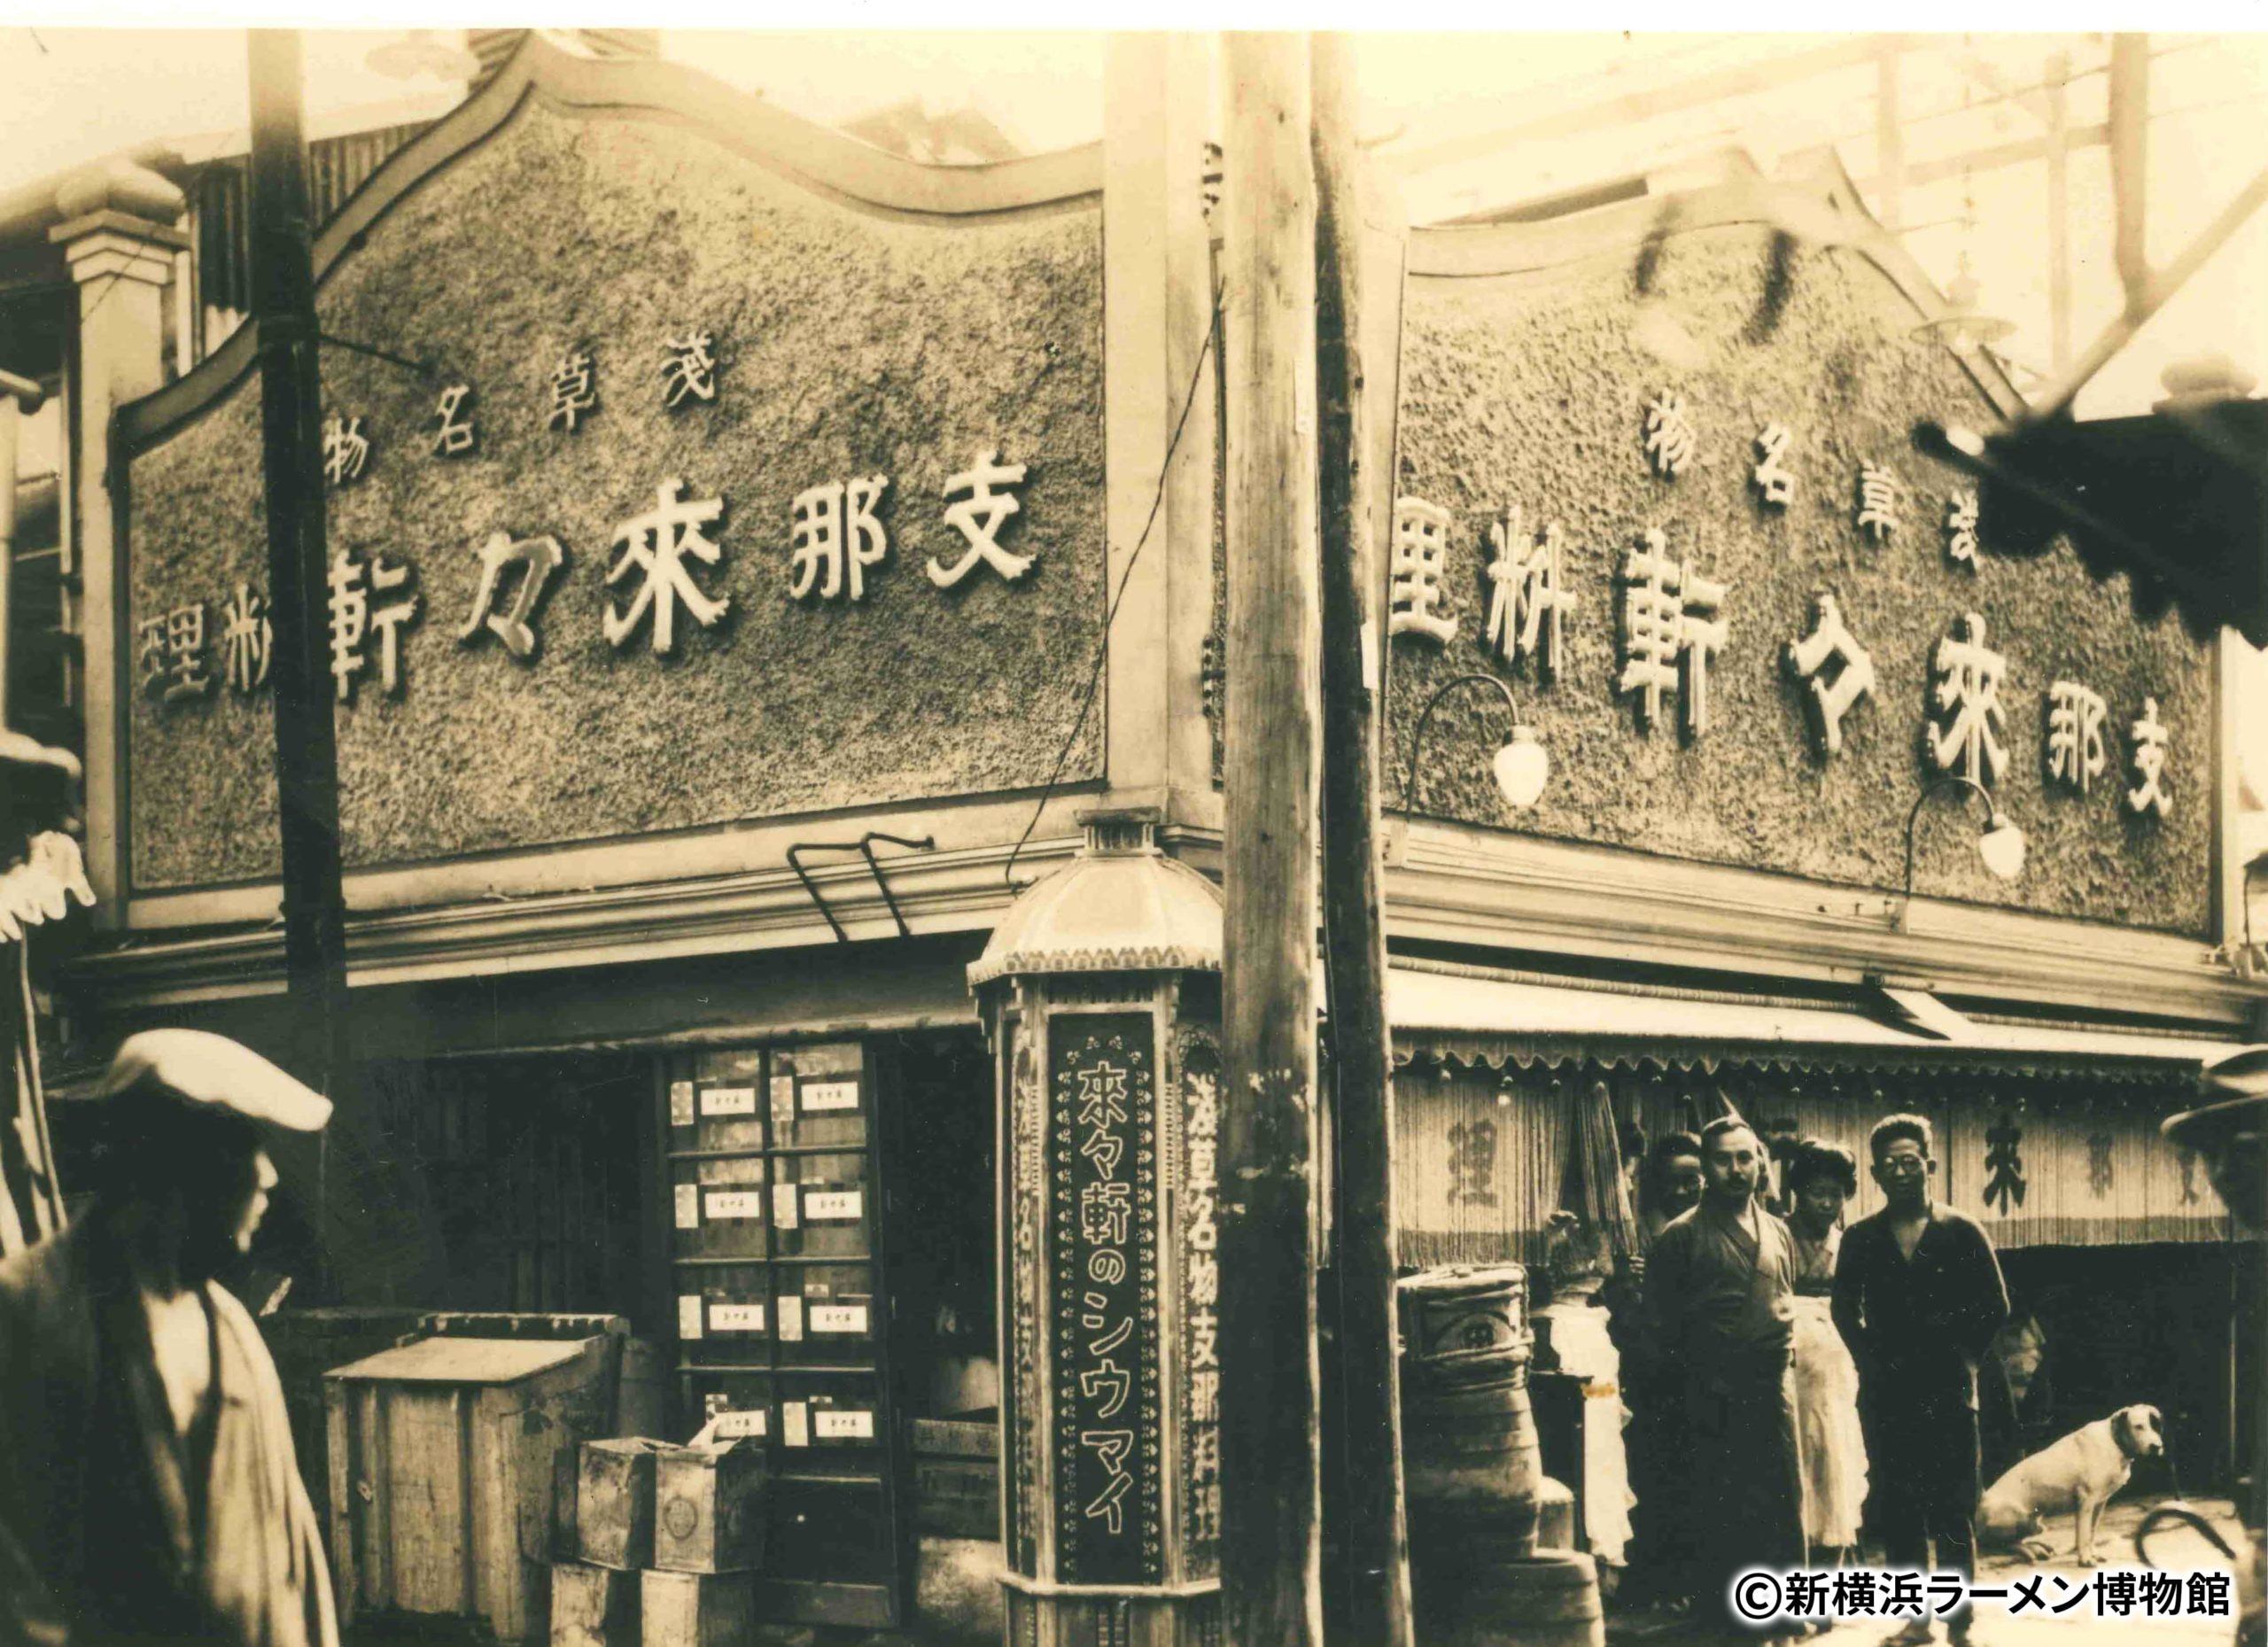 Rairaiken reopening 1 - old Rairaiken store in 1910